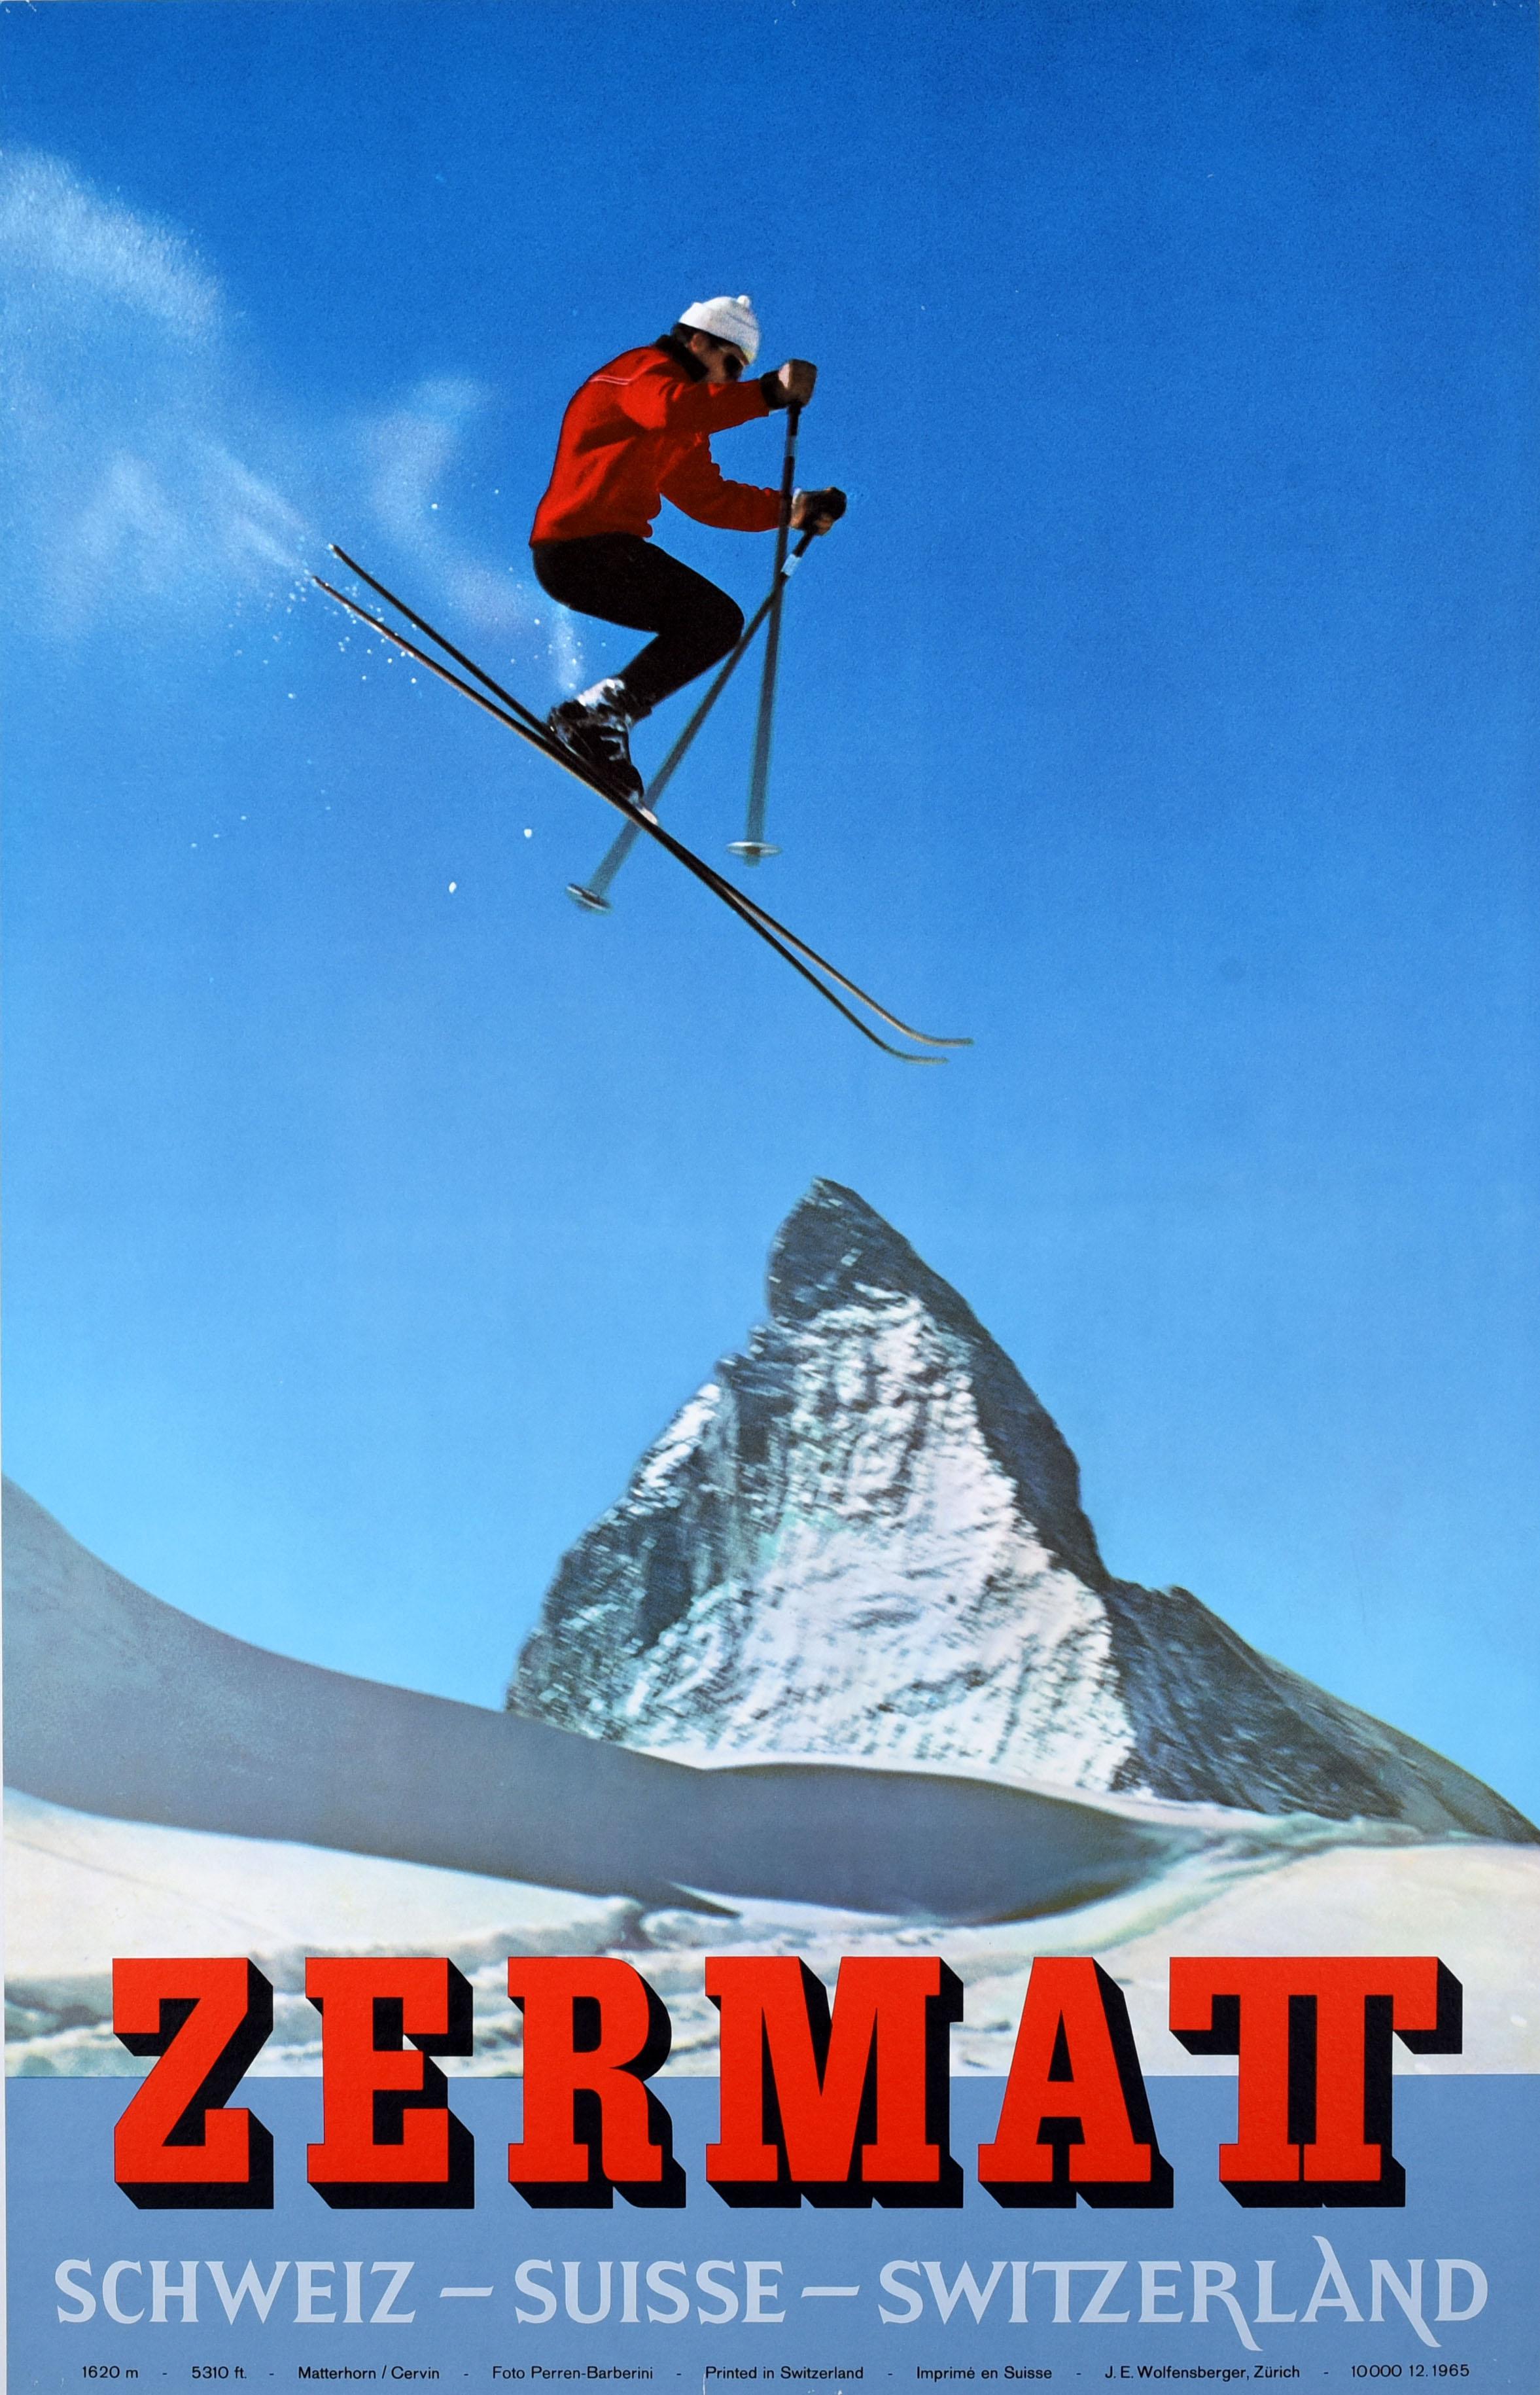 Alfred Perren-Barberini Print - Original Vintage Poster Zermatt Switzerland Matterhorn Skiing Winter Sport Alps